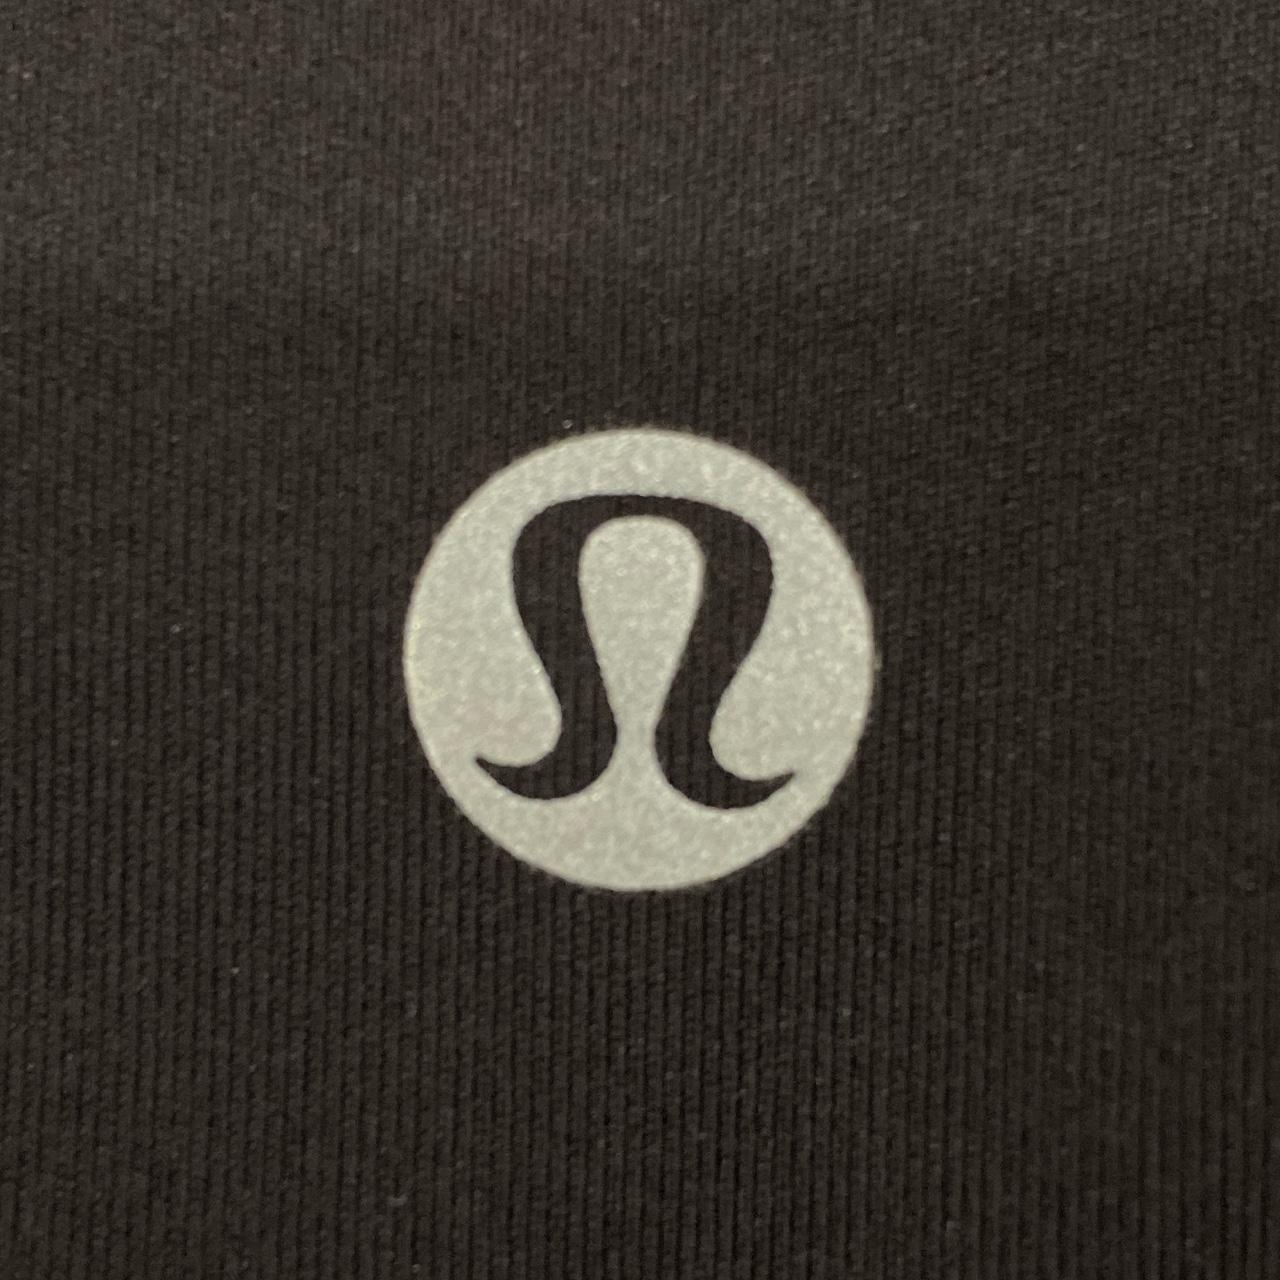 lululemon wunder under leggings - size 4 - 25” - Depop